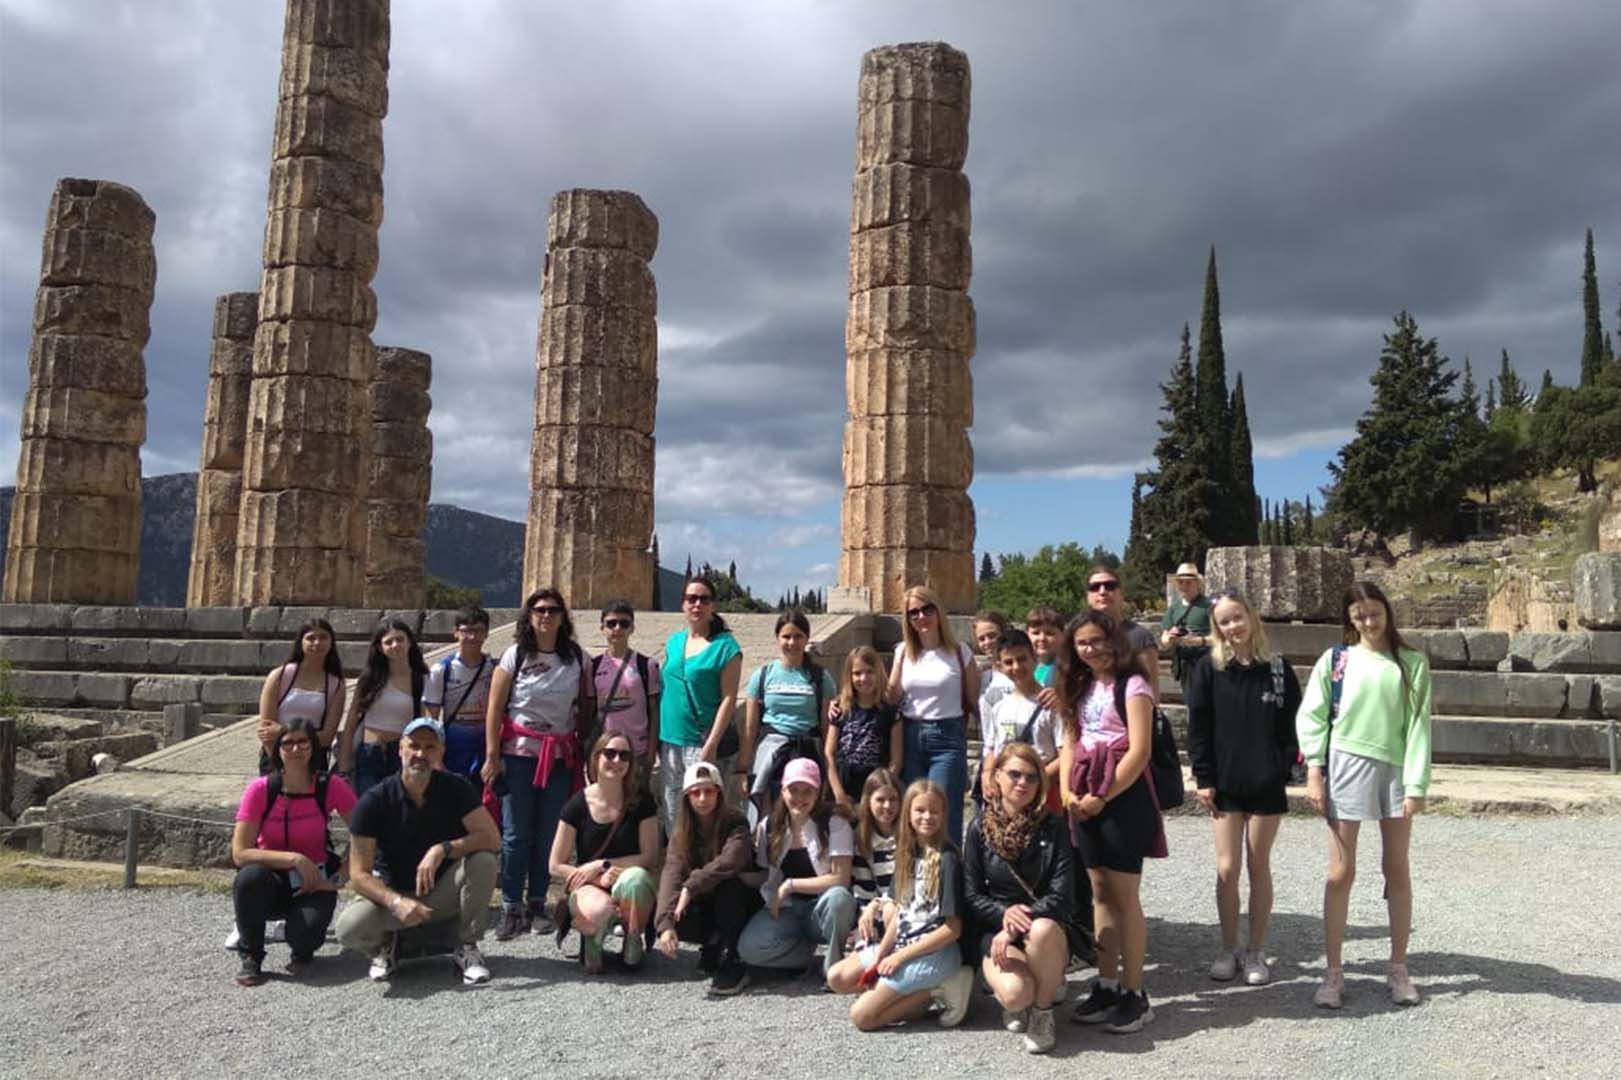 No coração da Grécia, numa escola do Município de Lamia, uma semana de intercâmbio Erasmus reuniu escolas de Portugal, Finlândia, Letônia e Grécia